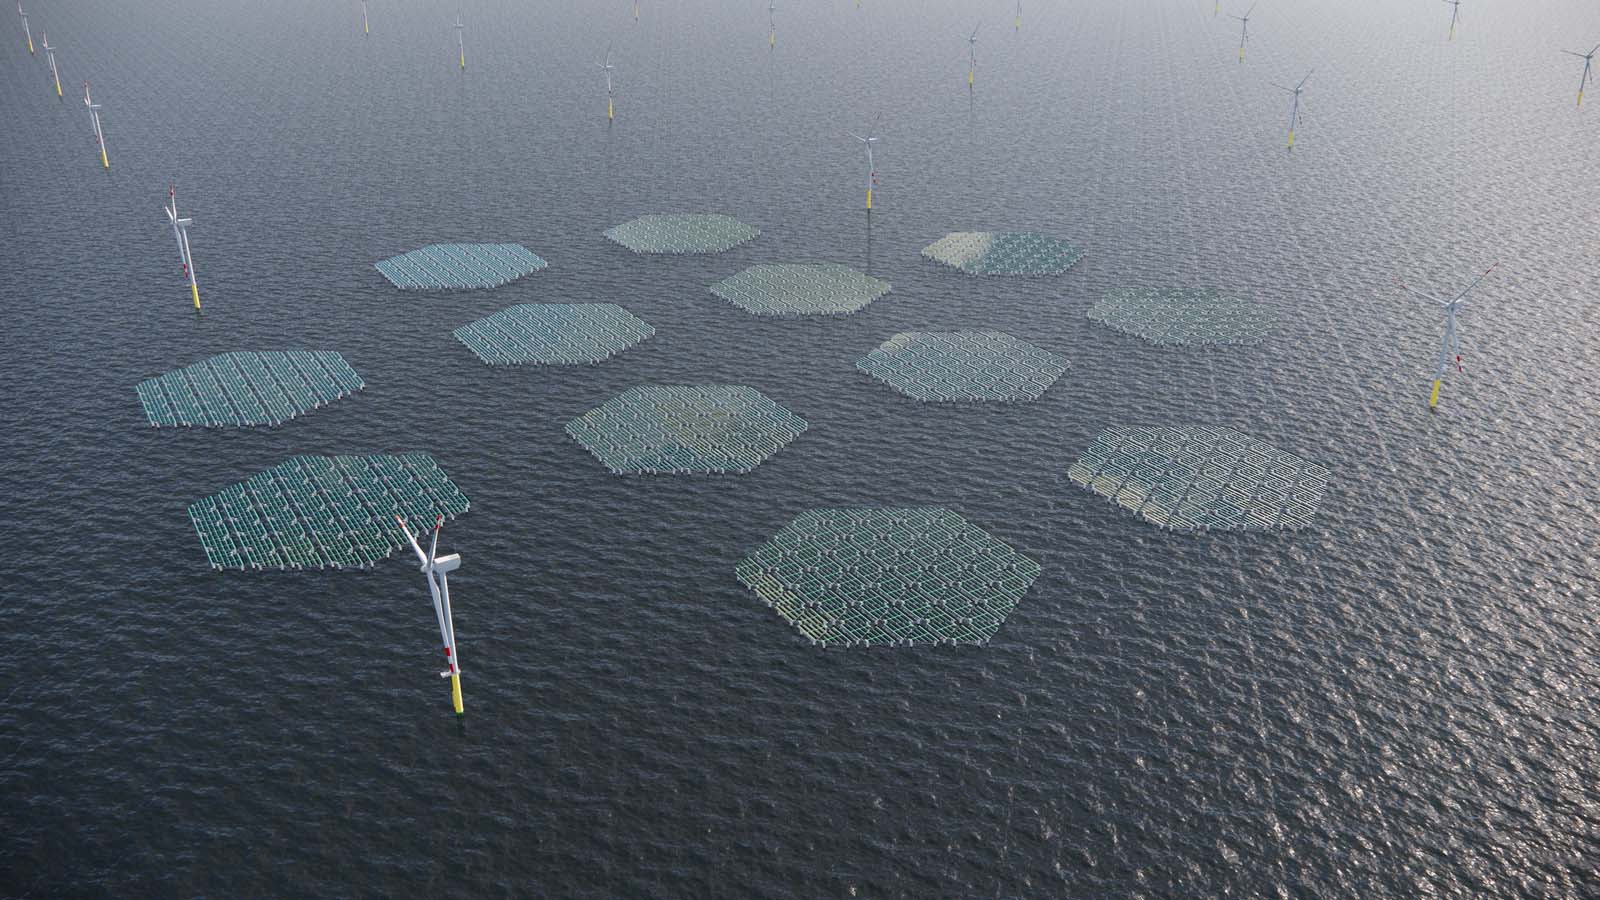 28 turbine eoliche galleggianti e piattaforme fotovoltaiche al largo della costa calabra per il futuro impianto di energia verde